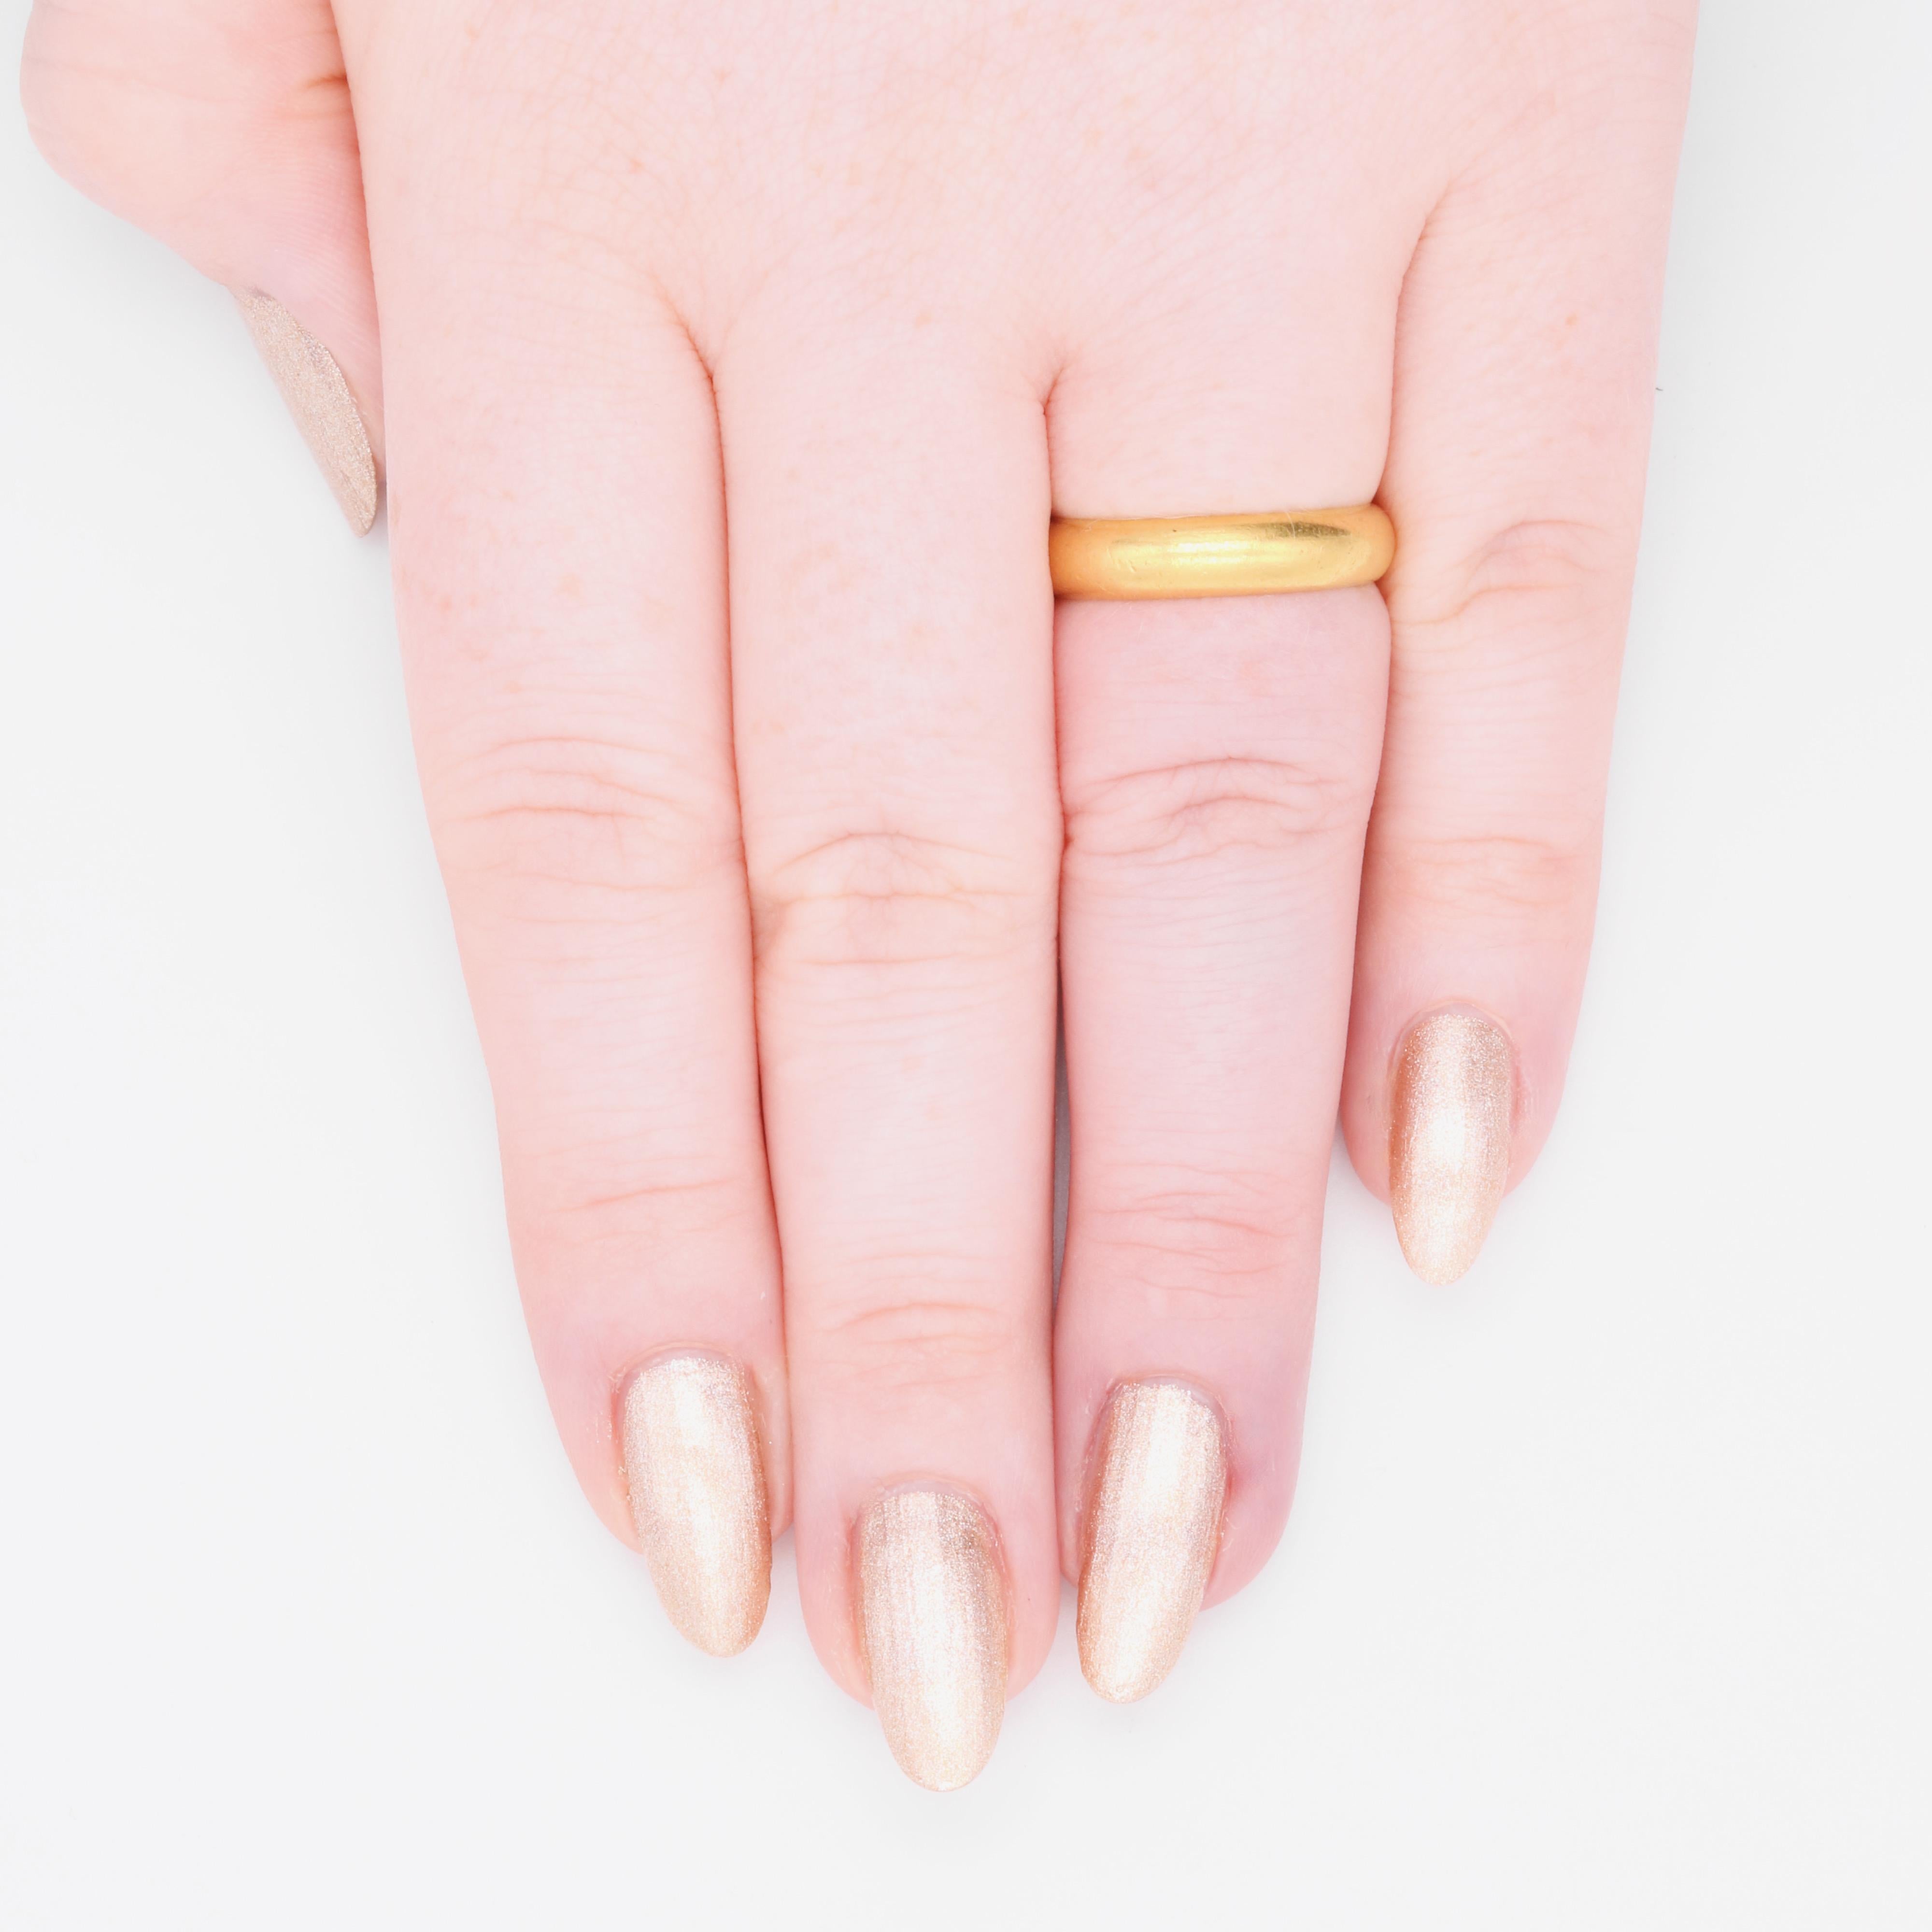 Goldring mit Inschrift auf der Innenseite des Ringes, aus 22 Karat Gelbgold.  

Dieser wunderschöne Ring ist ein Posy-Ring (oder Poesie-Ring), der seinen Namen aus dem Französischen 